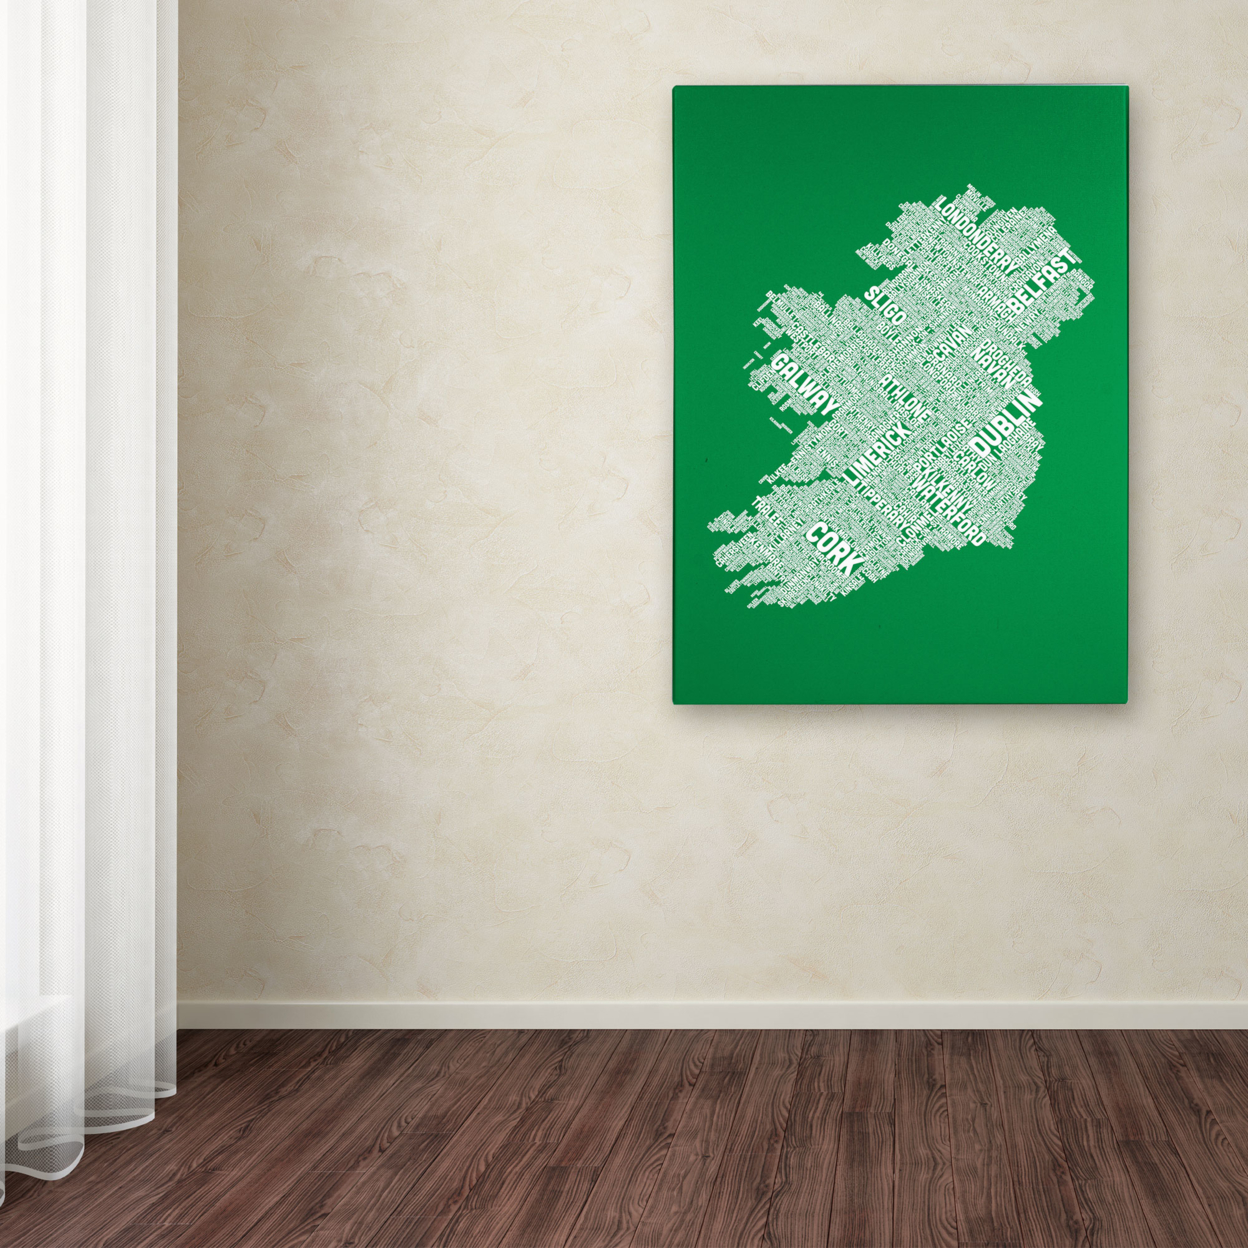 Michael Tompsett 'Ireland IX' Canvas Art 16 X 24